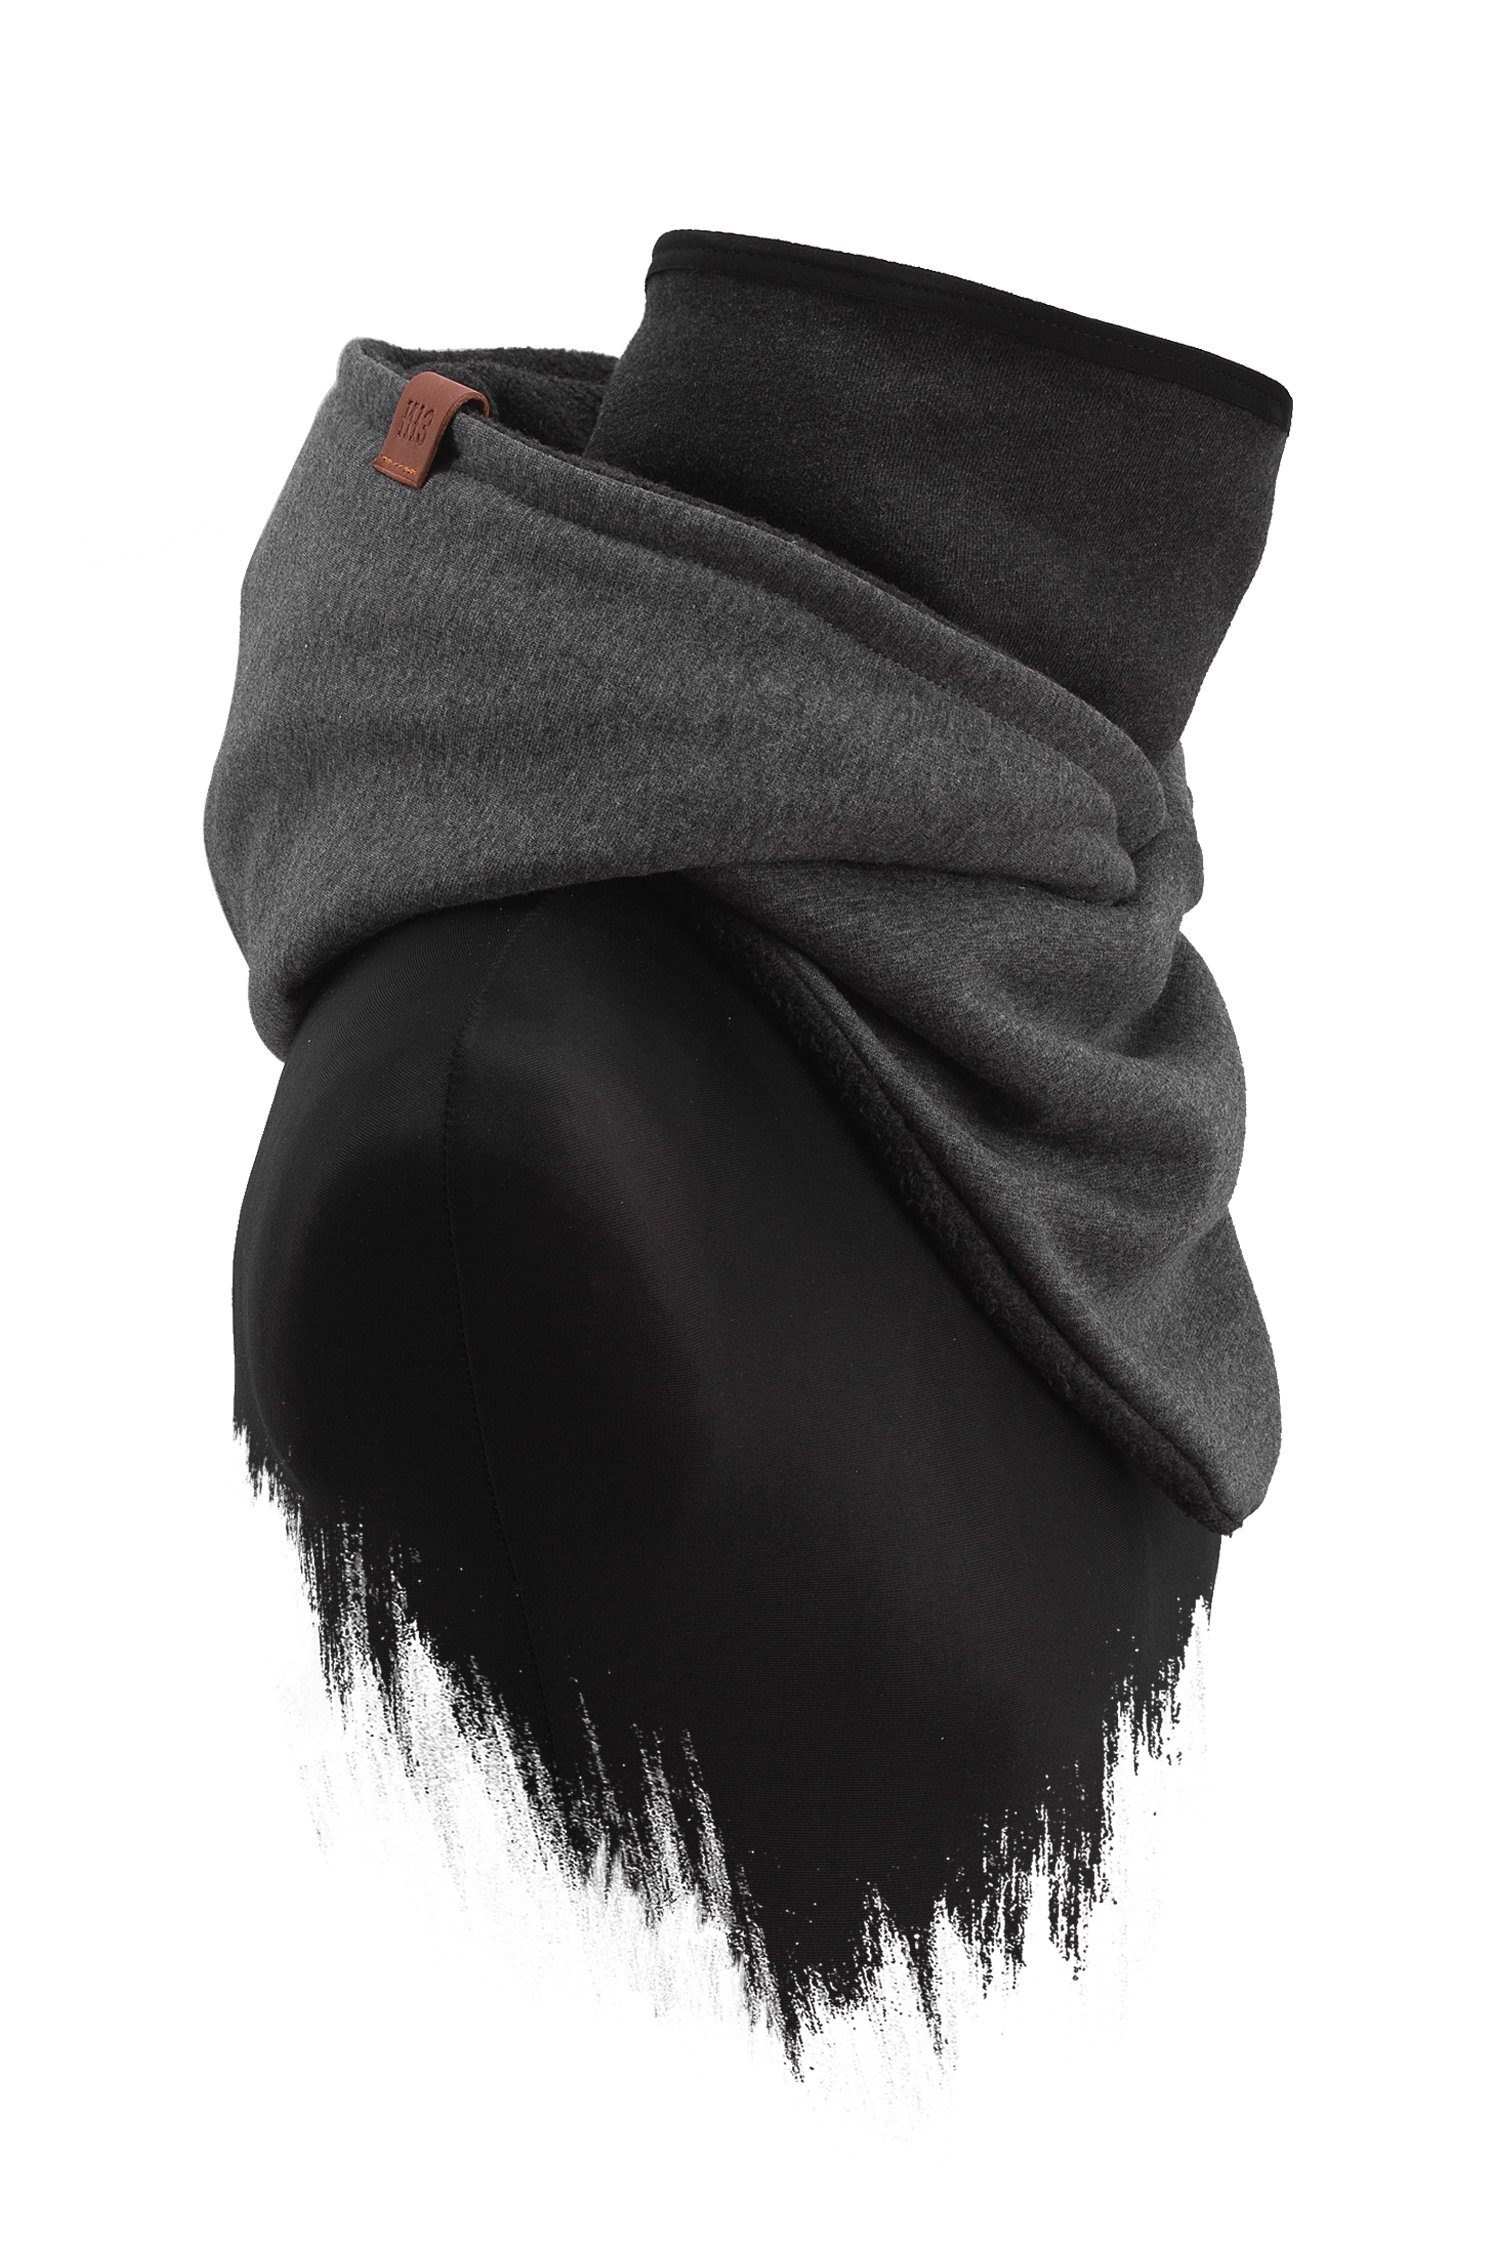 Alpenfleece, - Manufaktur13 Schal aus Hooded mit Windbreaker Loop Kapuzenschal, Rough Schal integriertem Dark